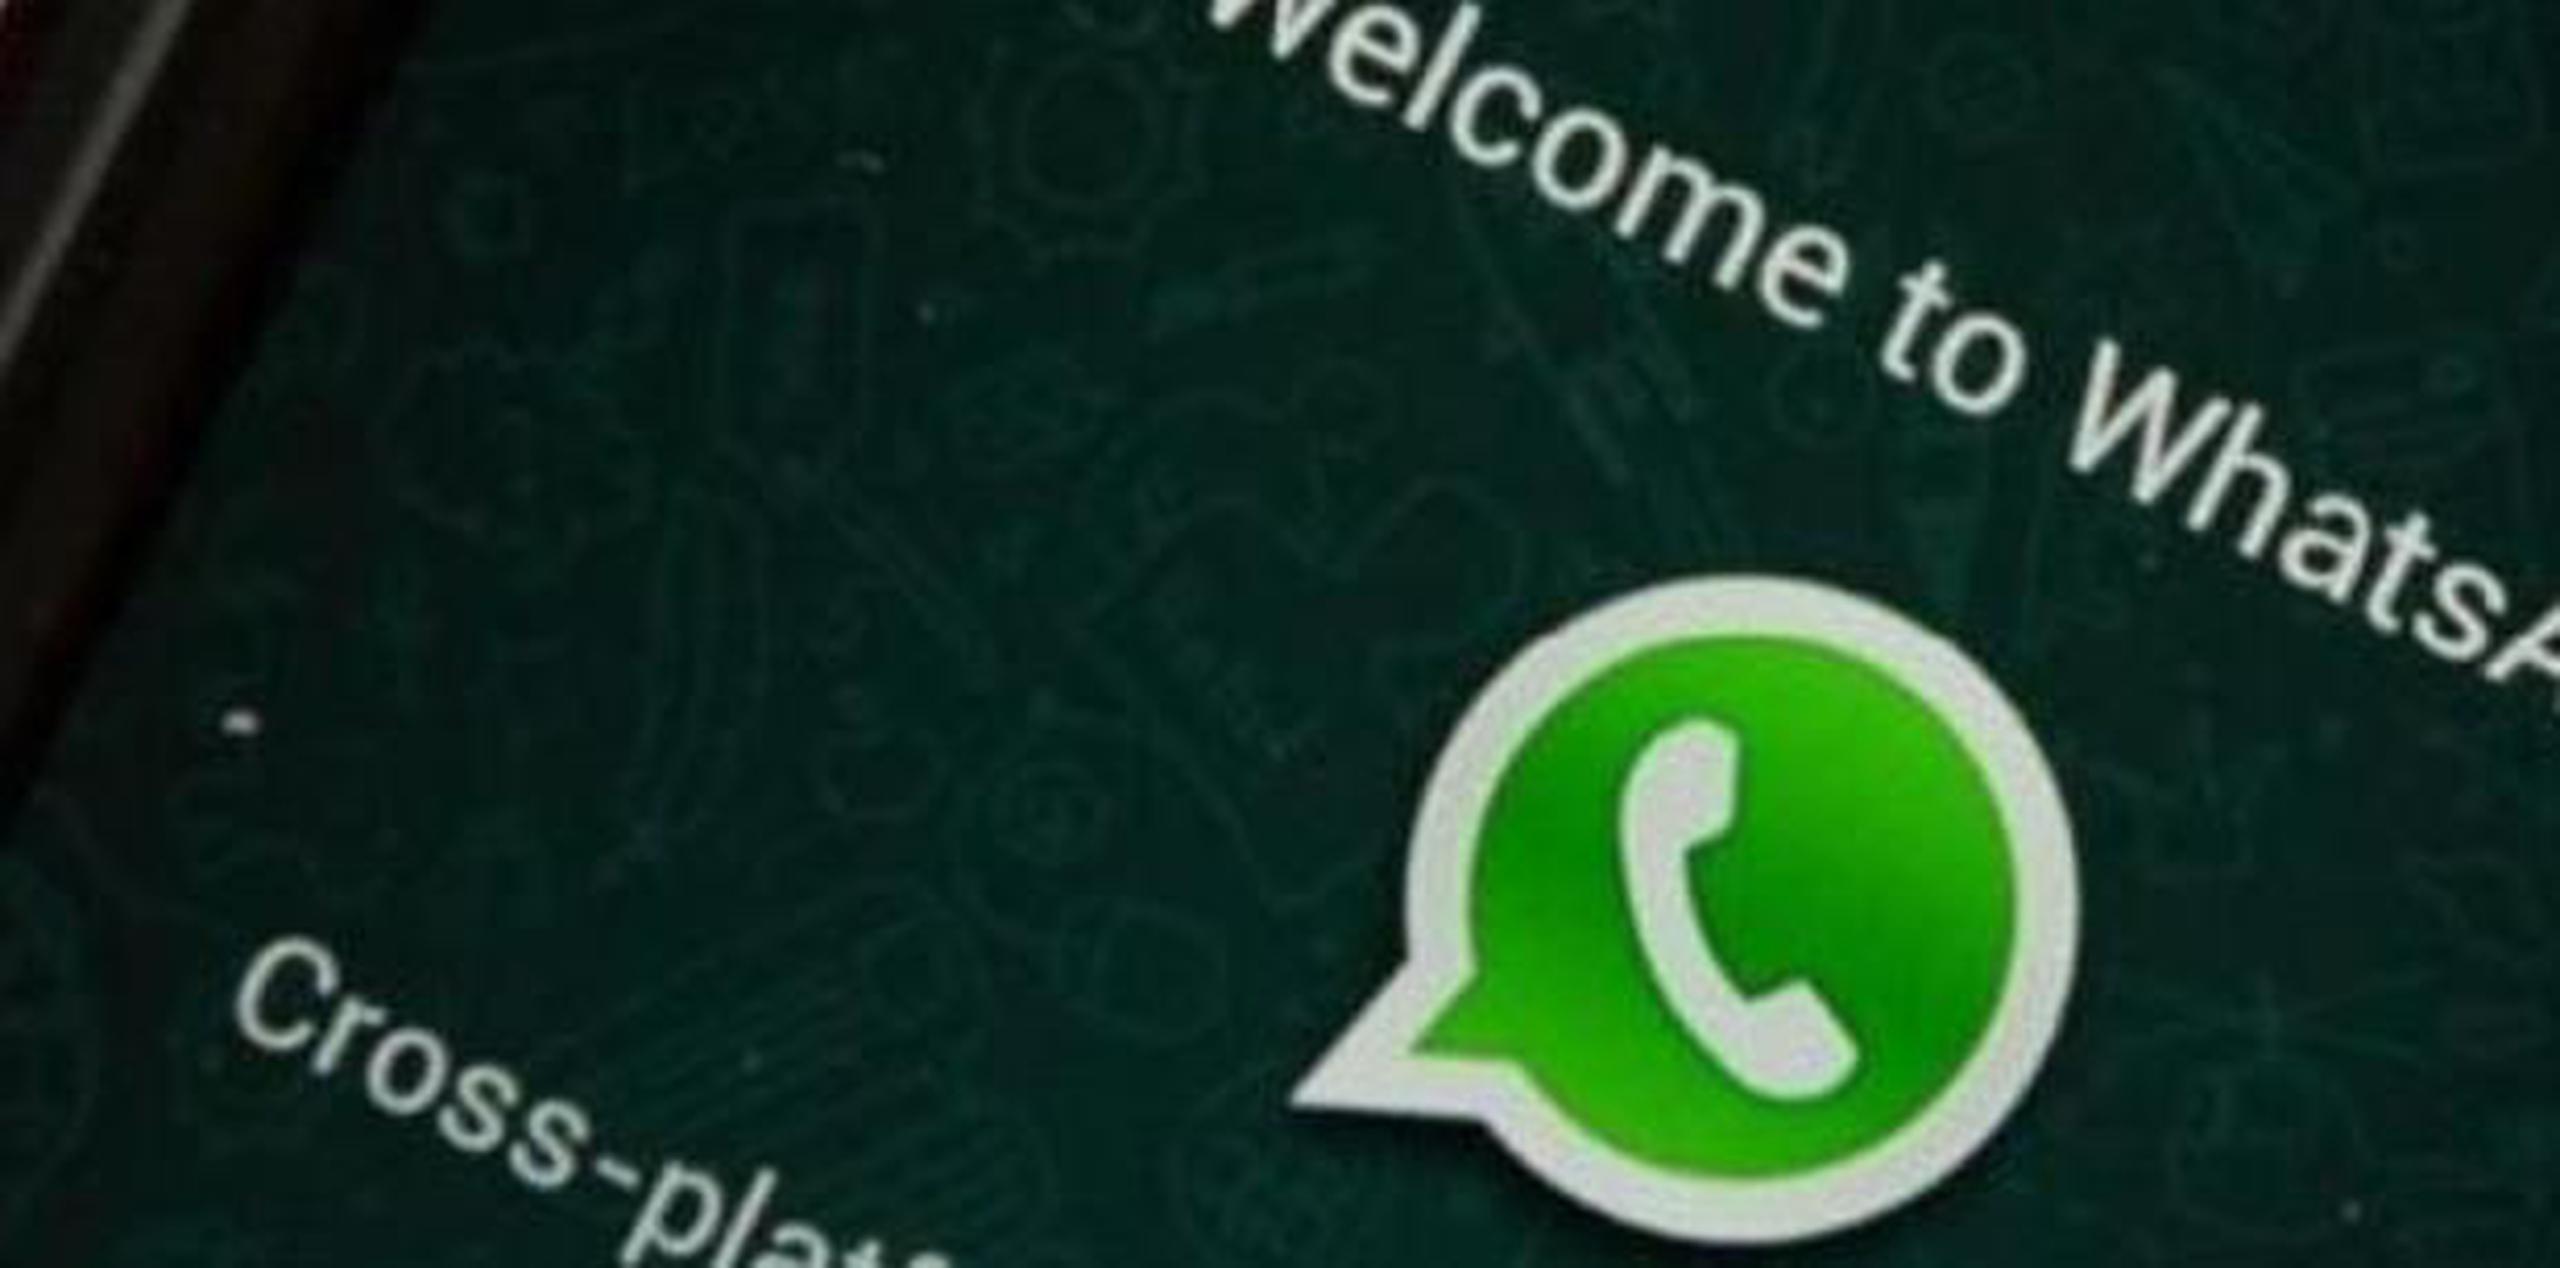 WhatsApp: qué celulares no contarán con el app desde el 31 de